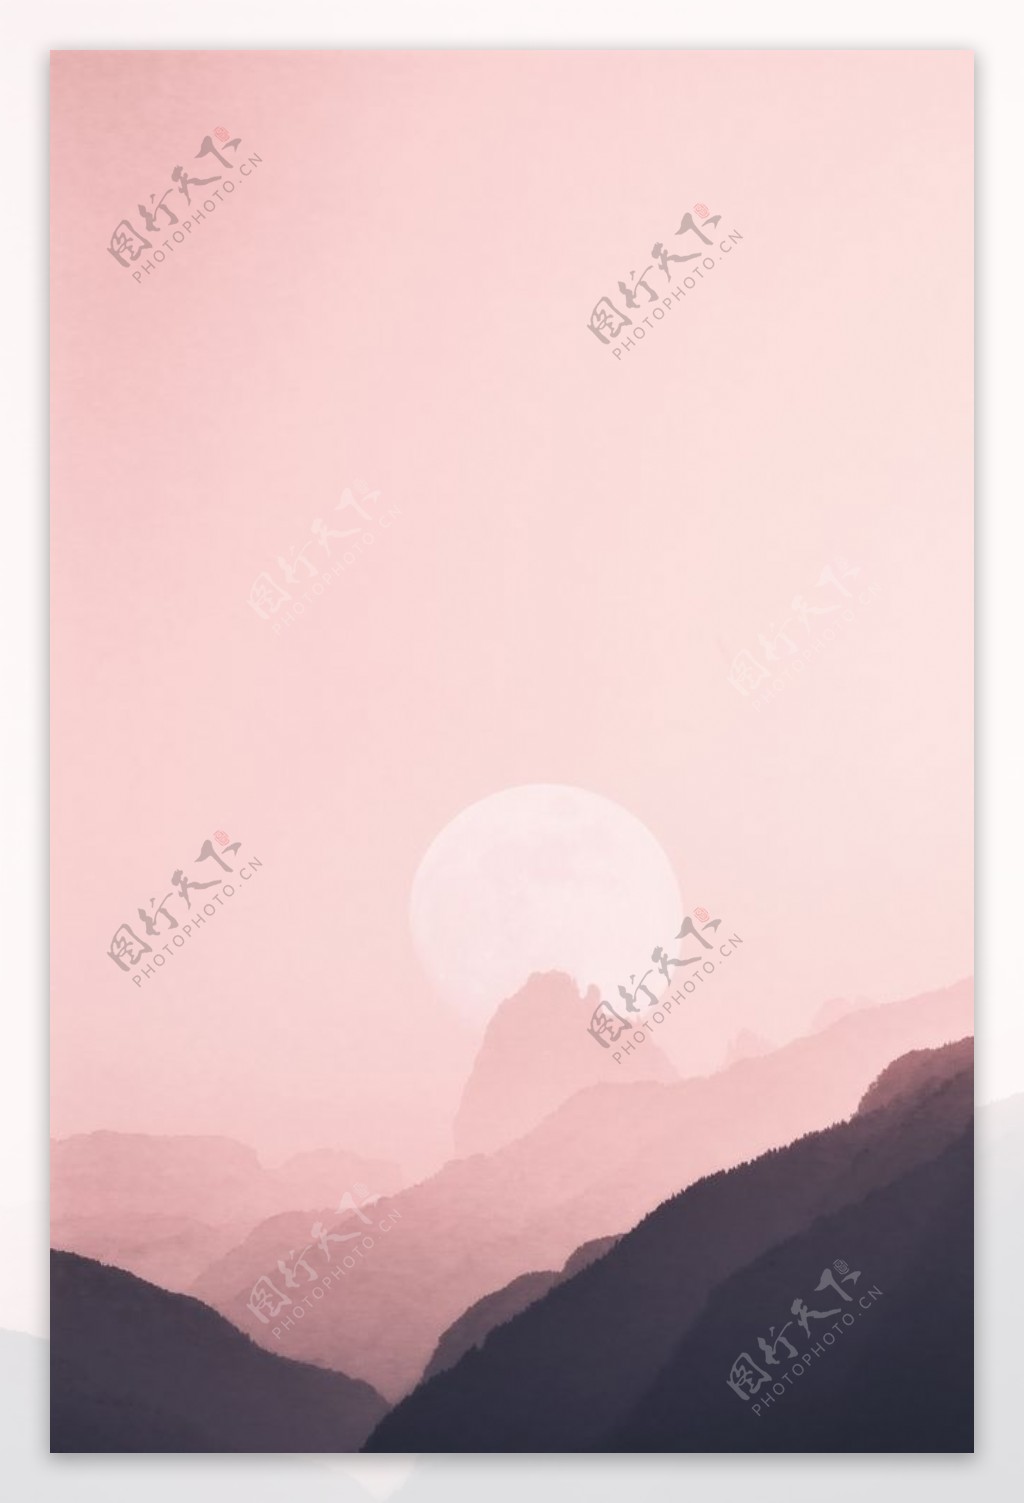 粉色山背景